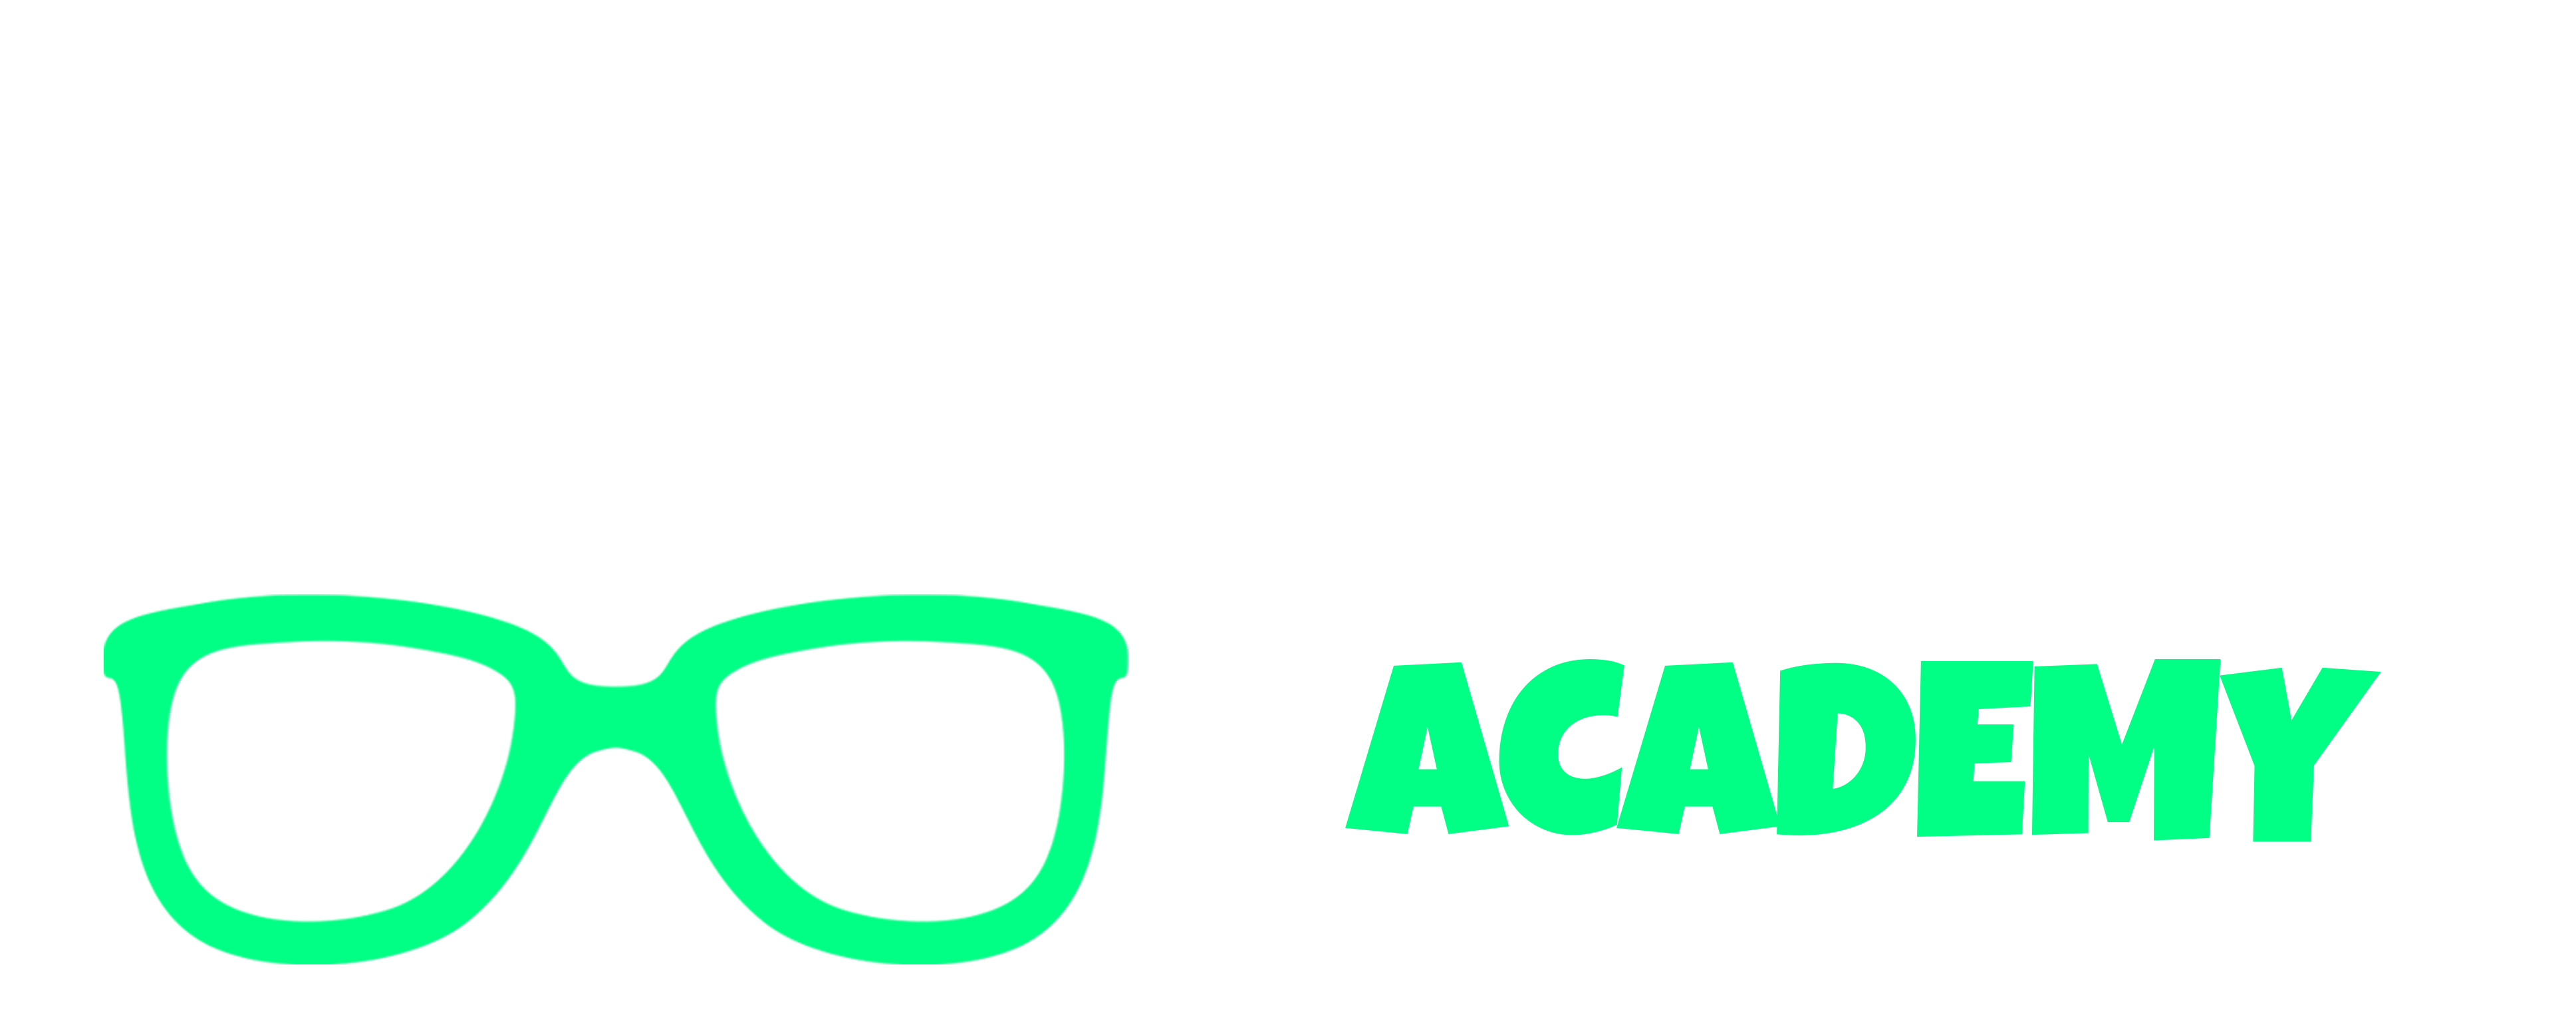 Hipernova Academy